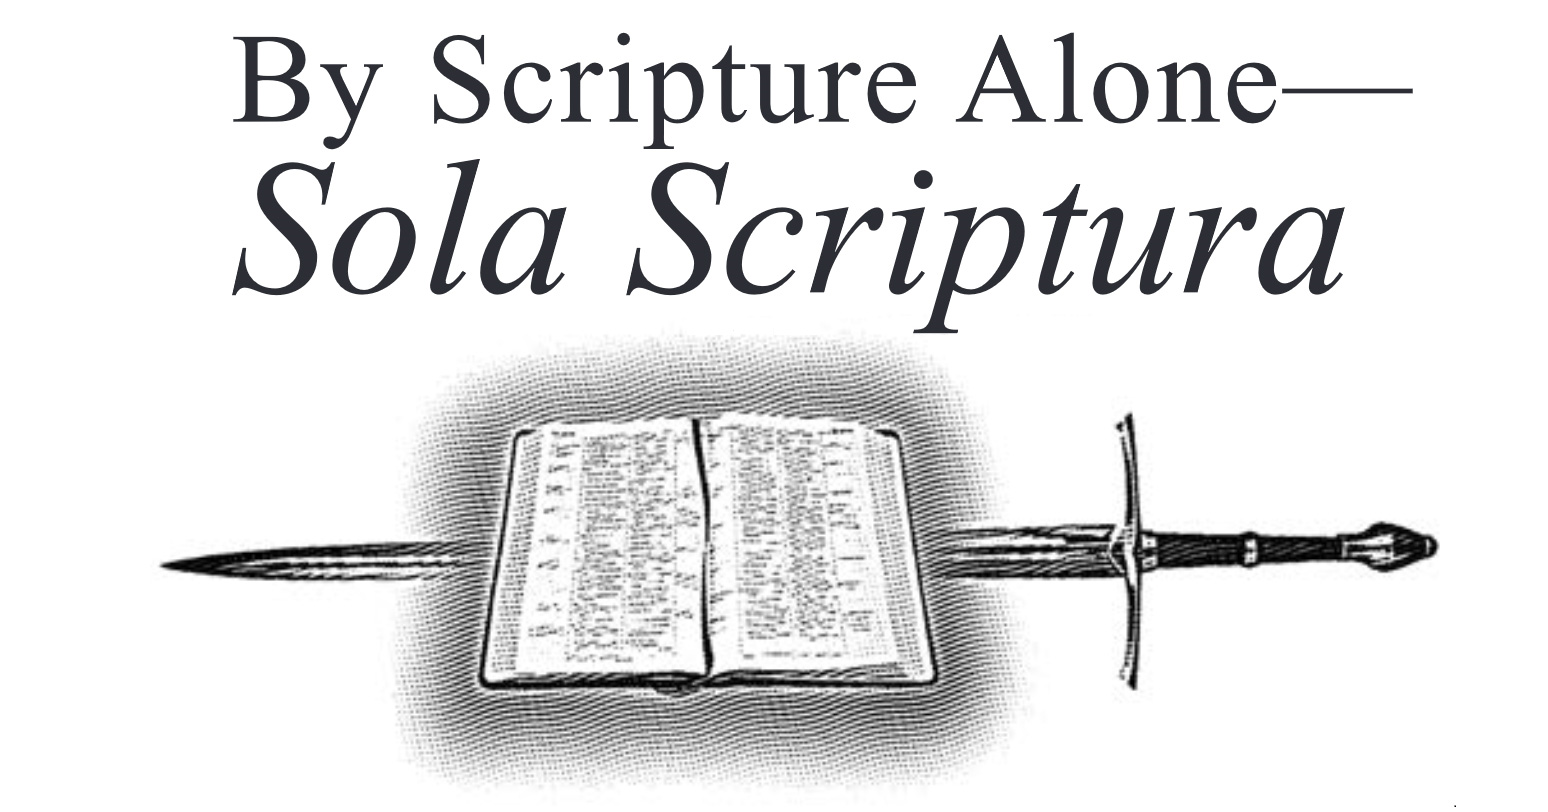 By Scripture Alone — Sola Scriptura